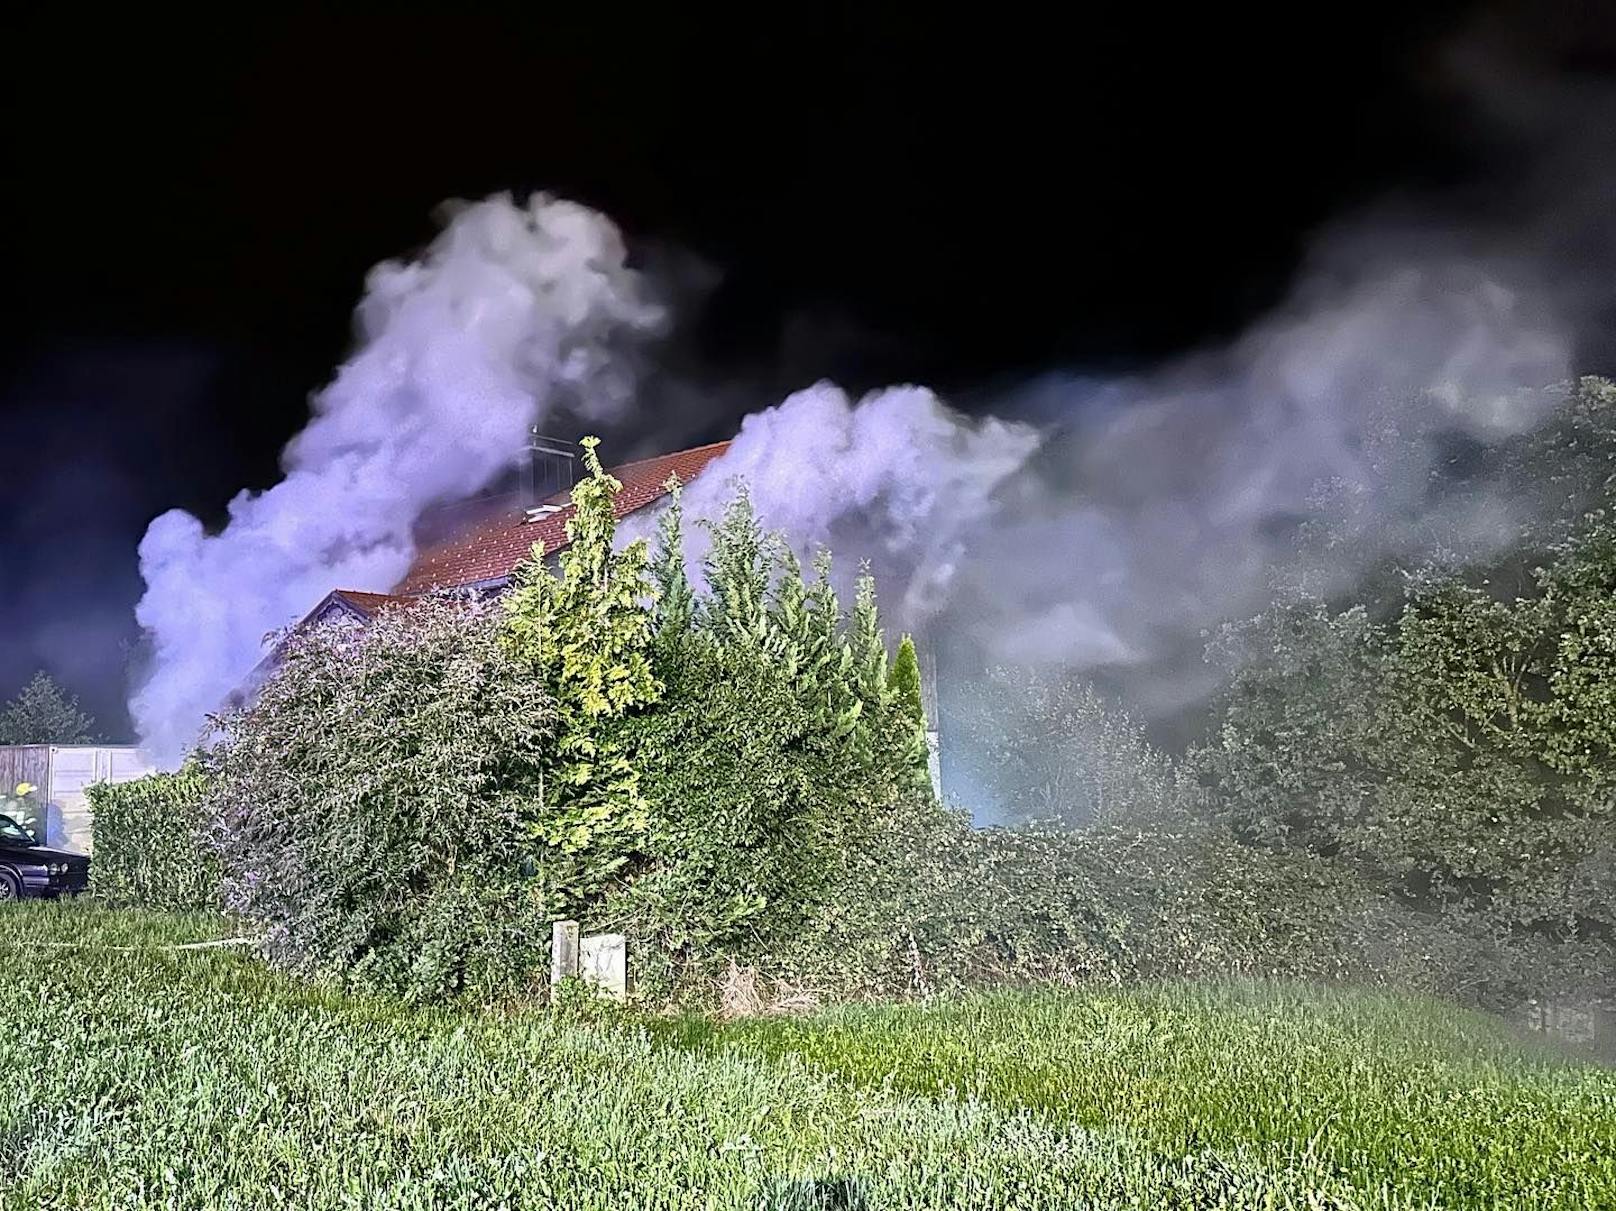 Mann kocht Paella auf Gas-Grill – Wohnung explodiert